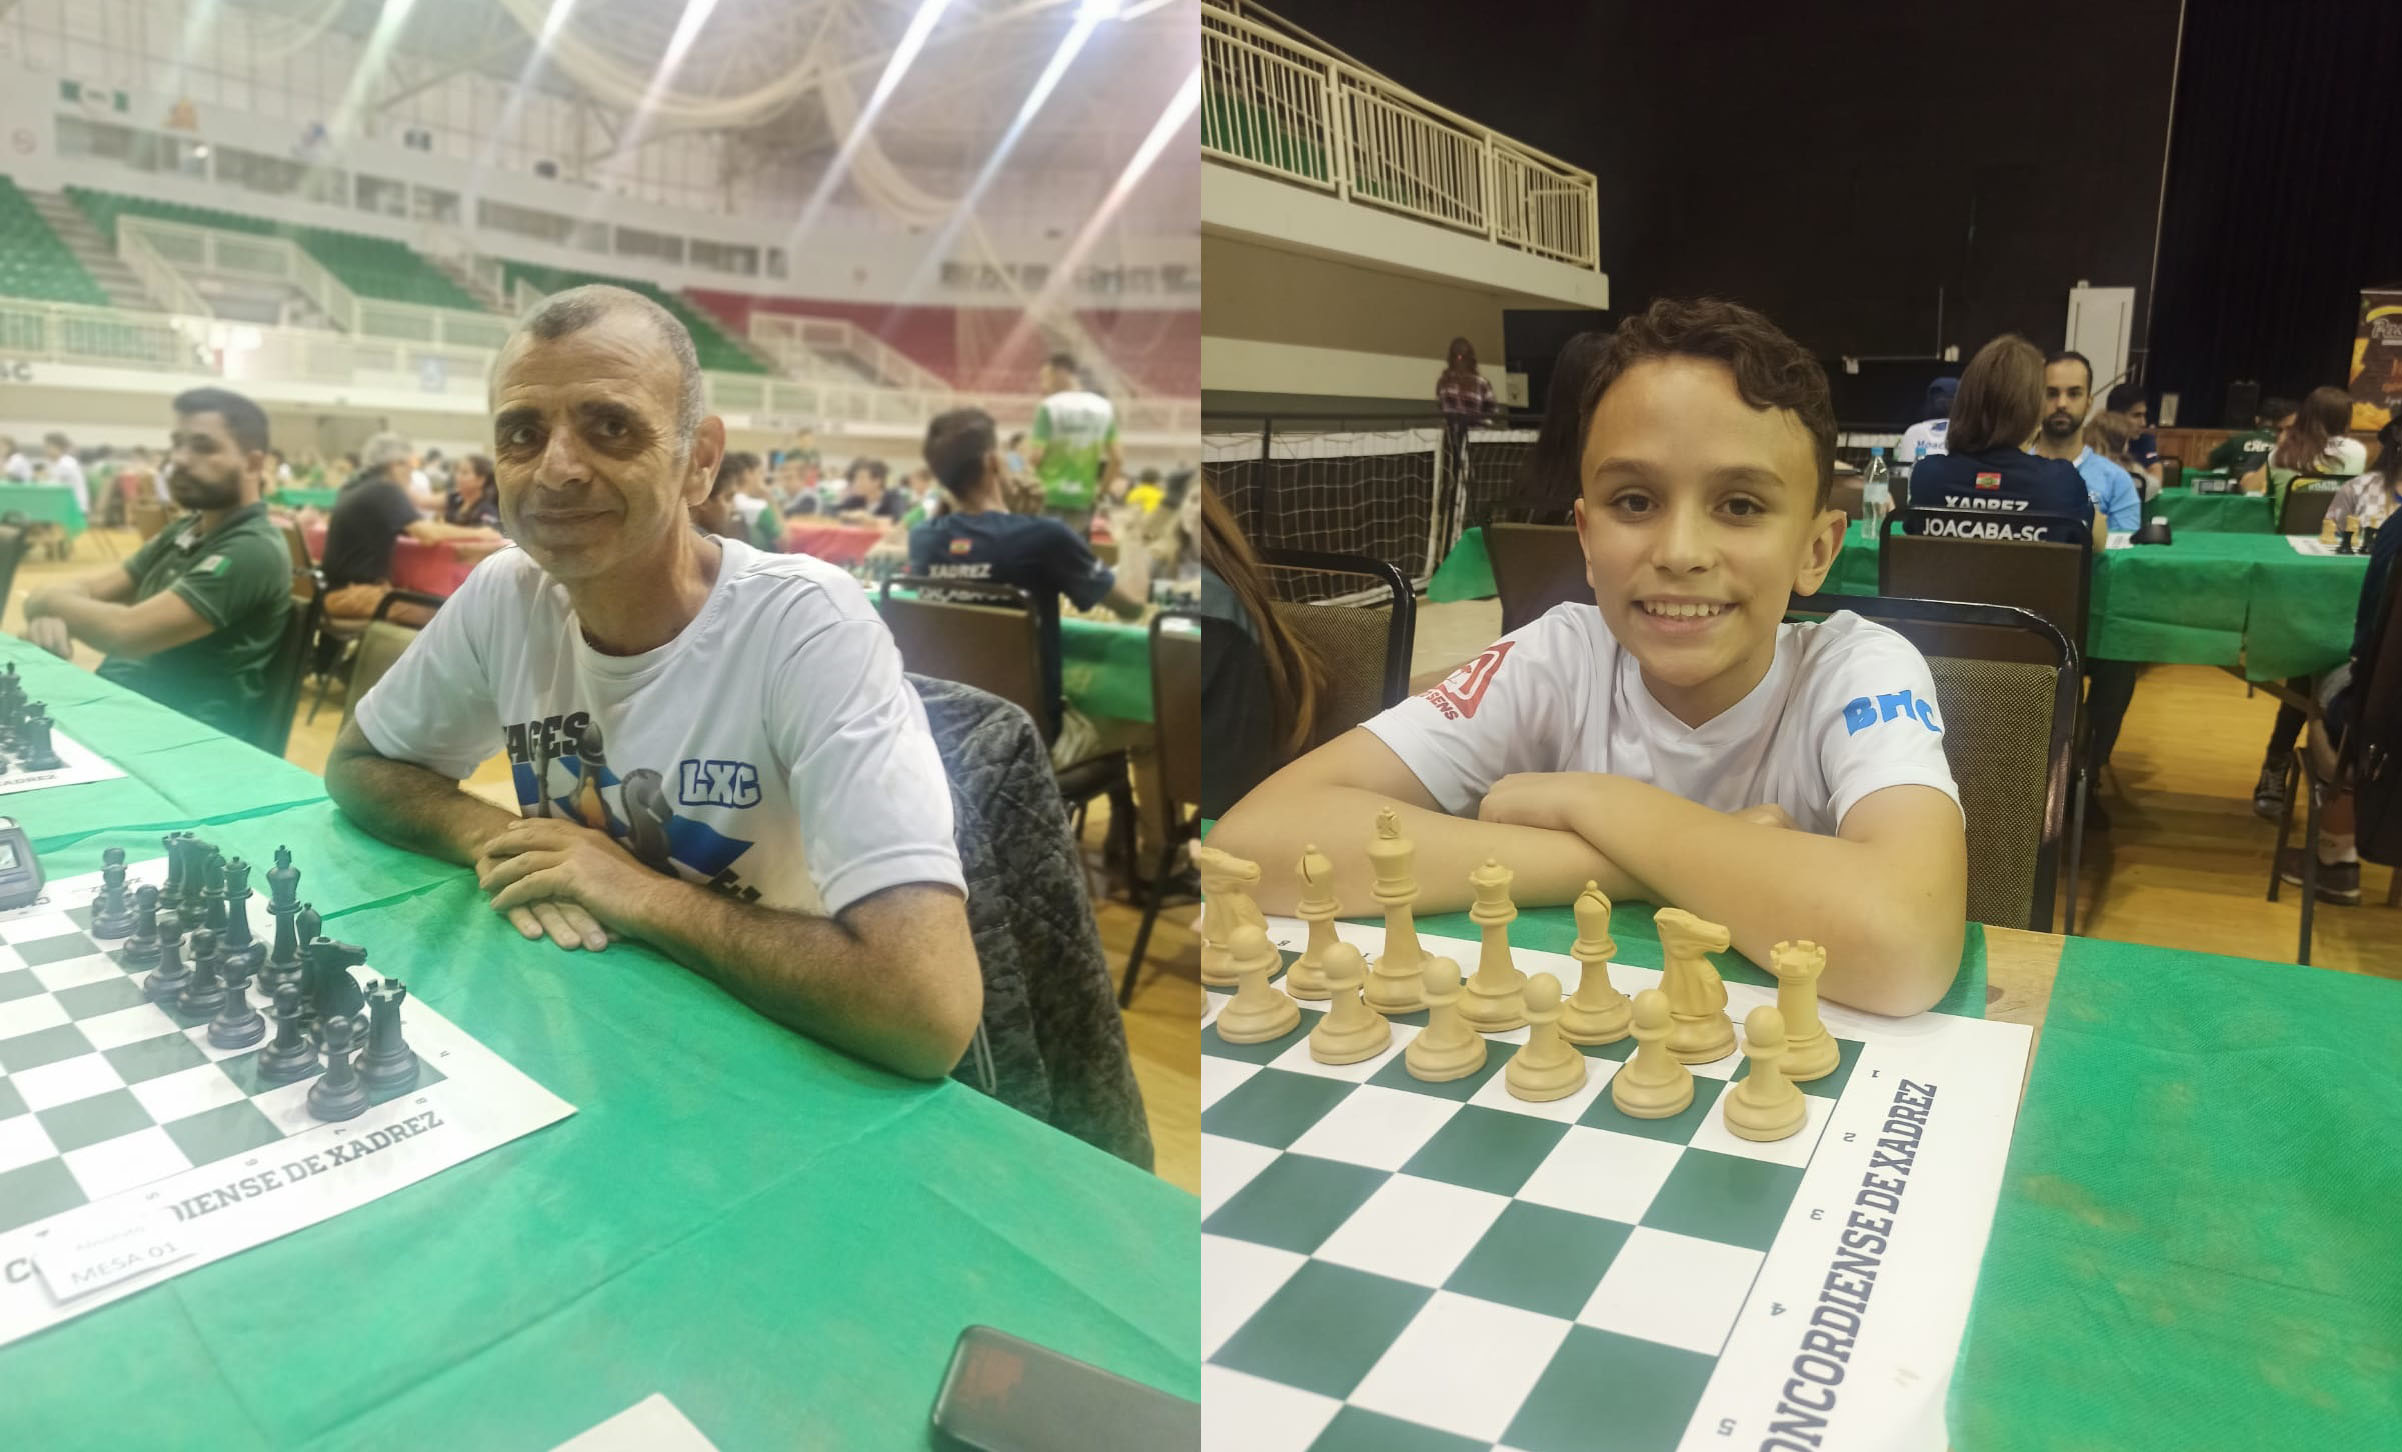 Torneio de Xadrez de alto nível para assistir, hoje, em Beltrão